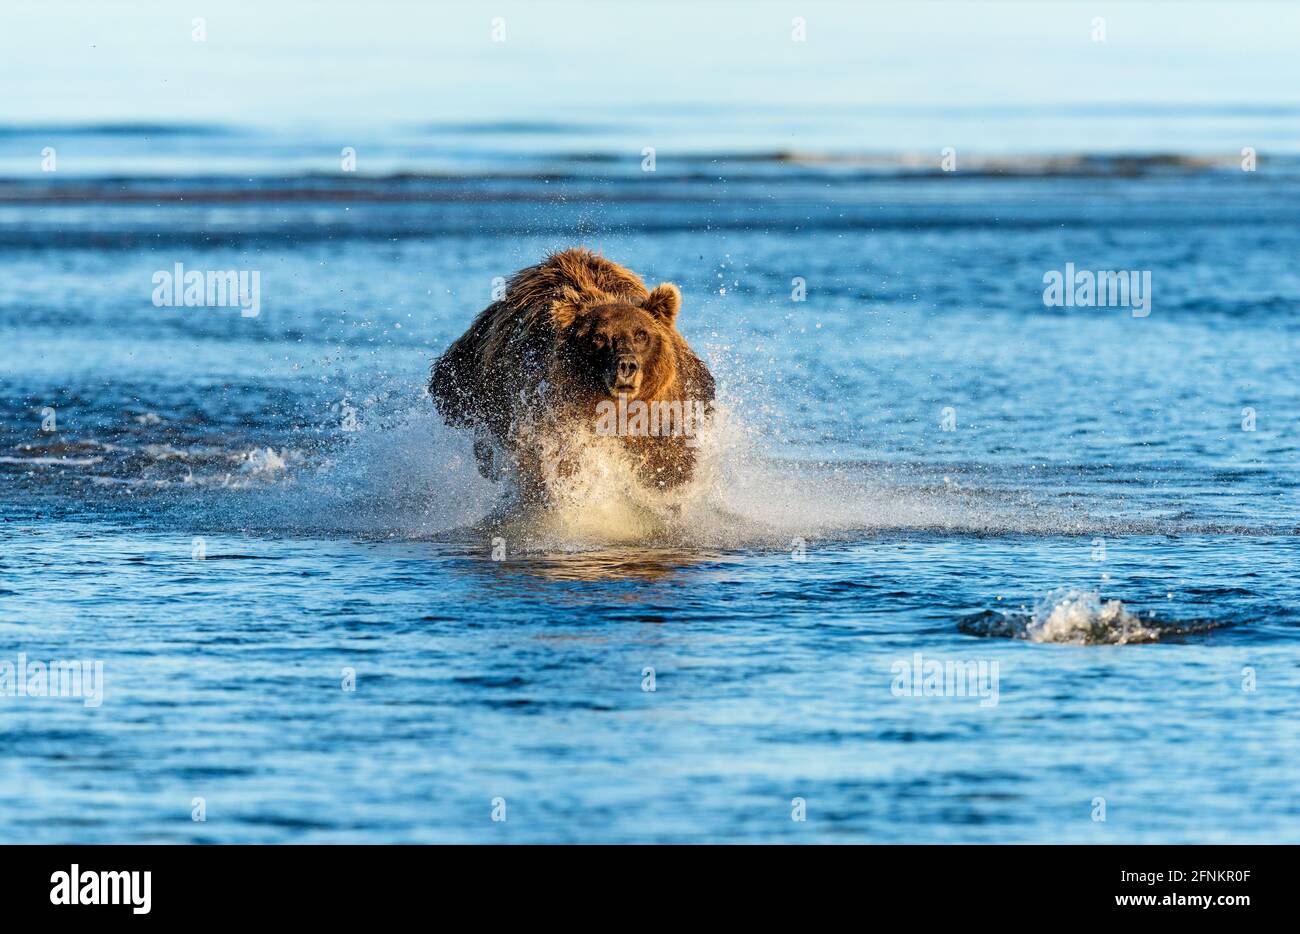 Un grand ours brun chasse un saumon, Silver Salmon Creek, parc national du lac Clark, Alaska. Vous pouvez voir le saumon pousser en amont dans le coin inférieur droit Banque D'Images